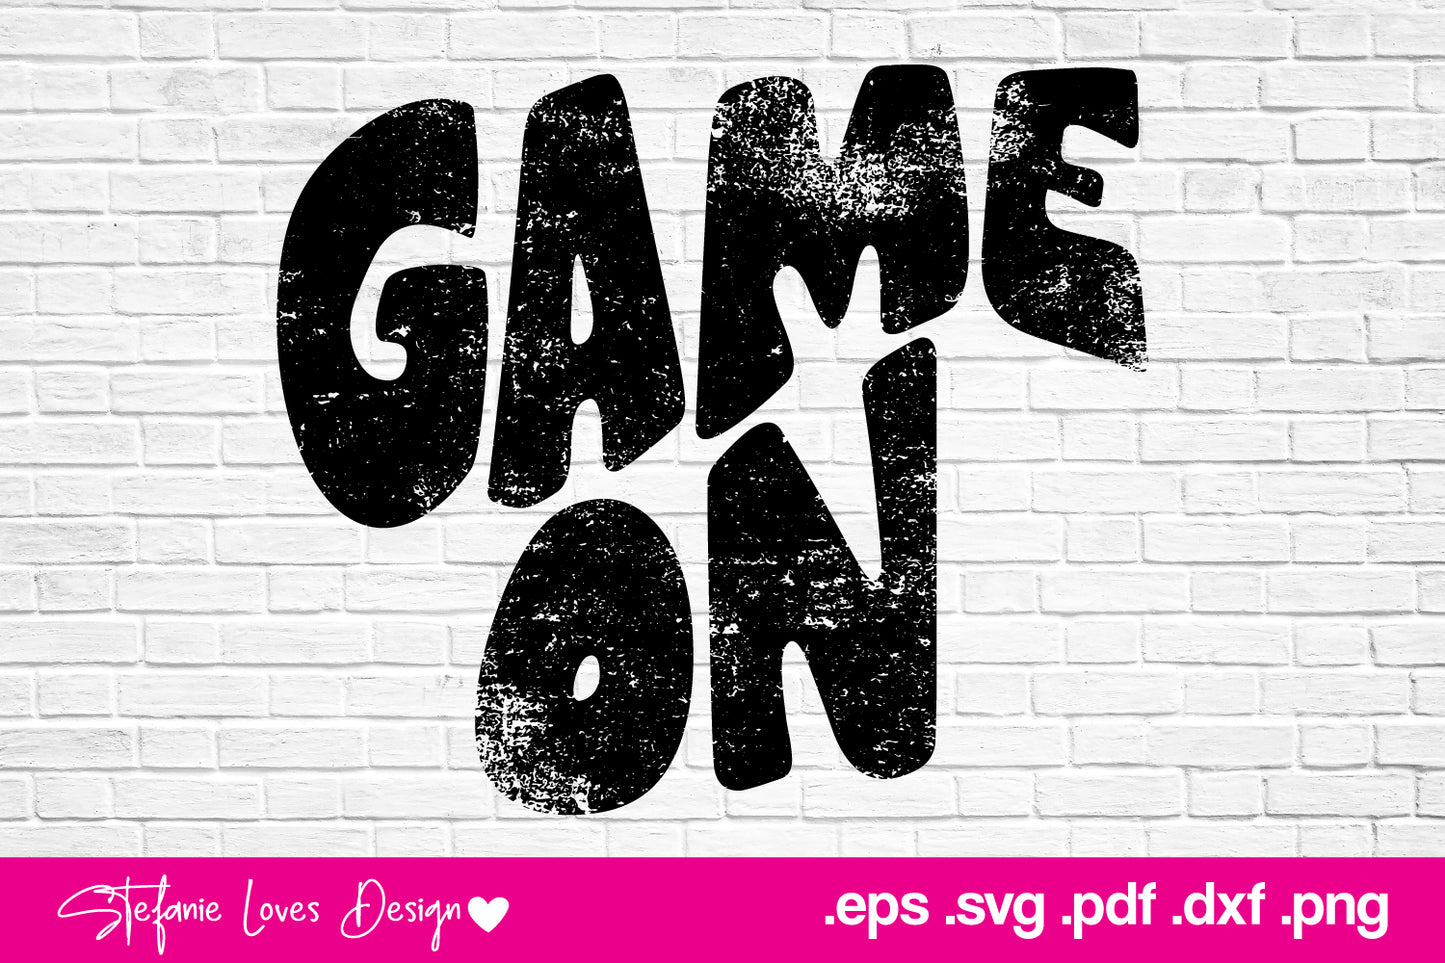 Game On Grunge png eps pdf, Digital Design